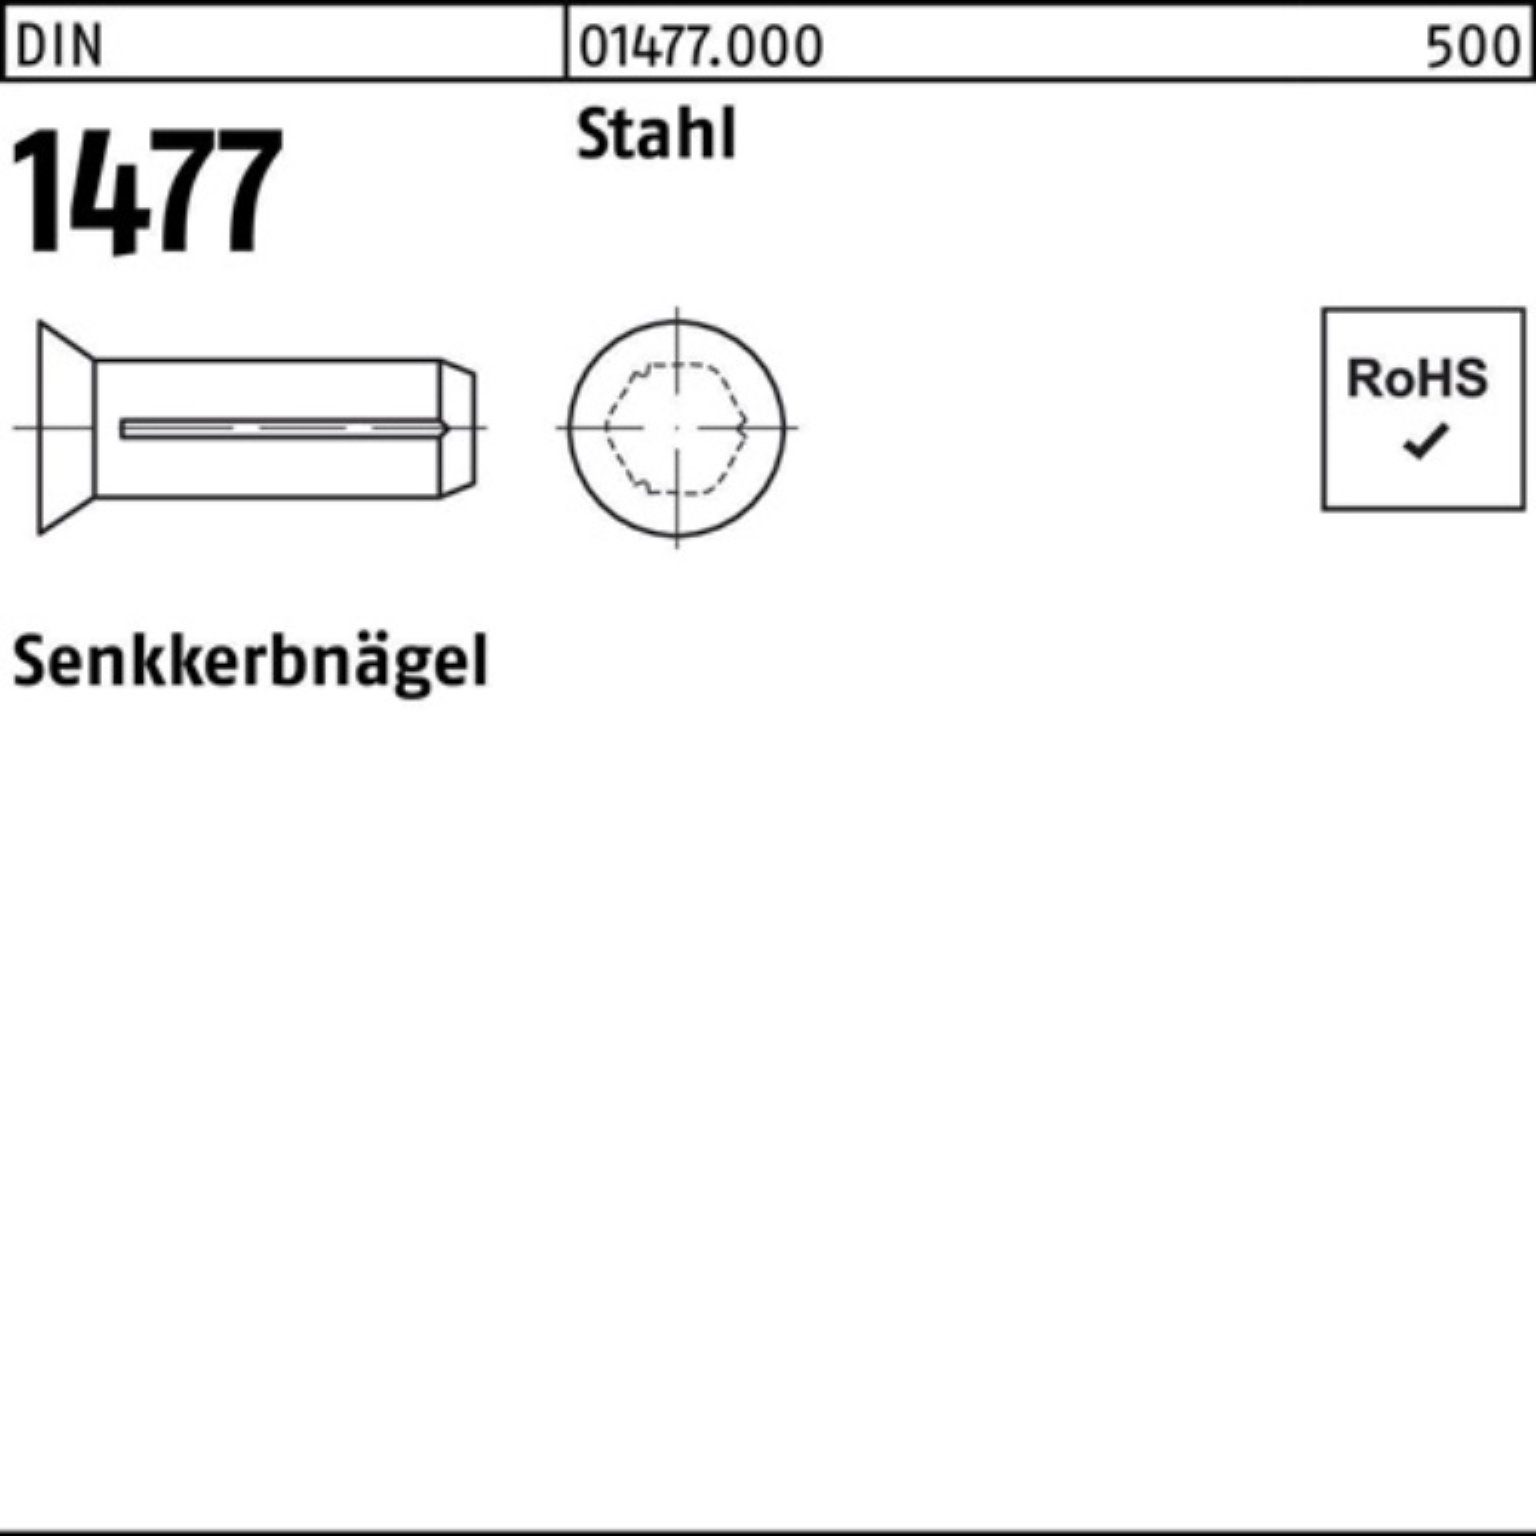 Pack Nagel 15 Senkkerbnagel 1477 250 DIN Stahl 1477 250er Stah 5x Stück Reyher DIN